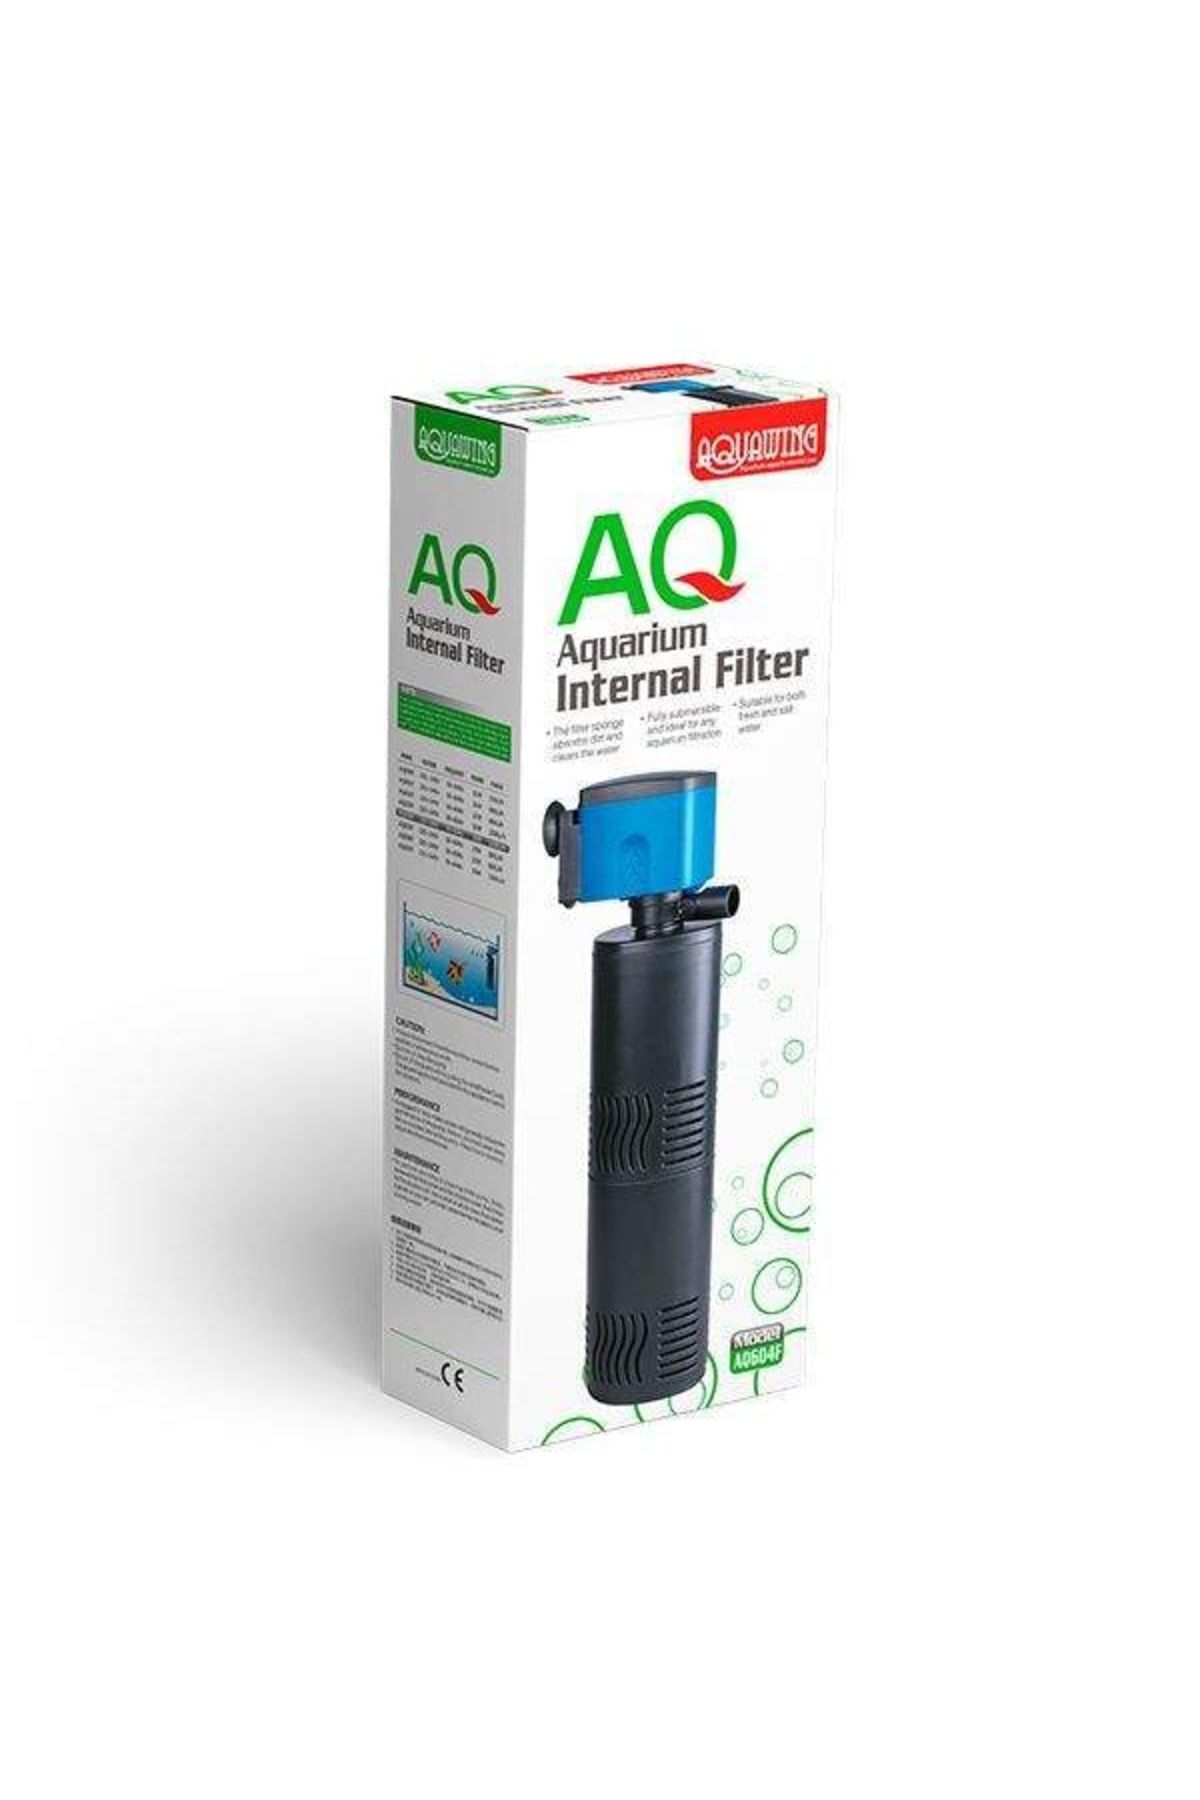 Aquawing Akvaryum Filtresi Aq604f Iç Filtre 20w 1200l/h